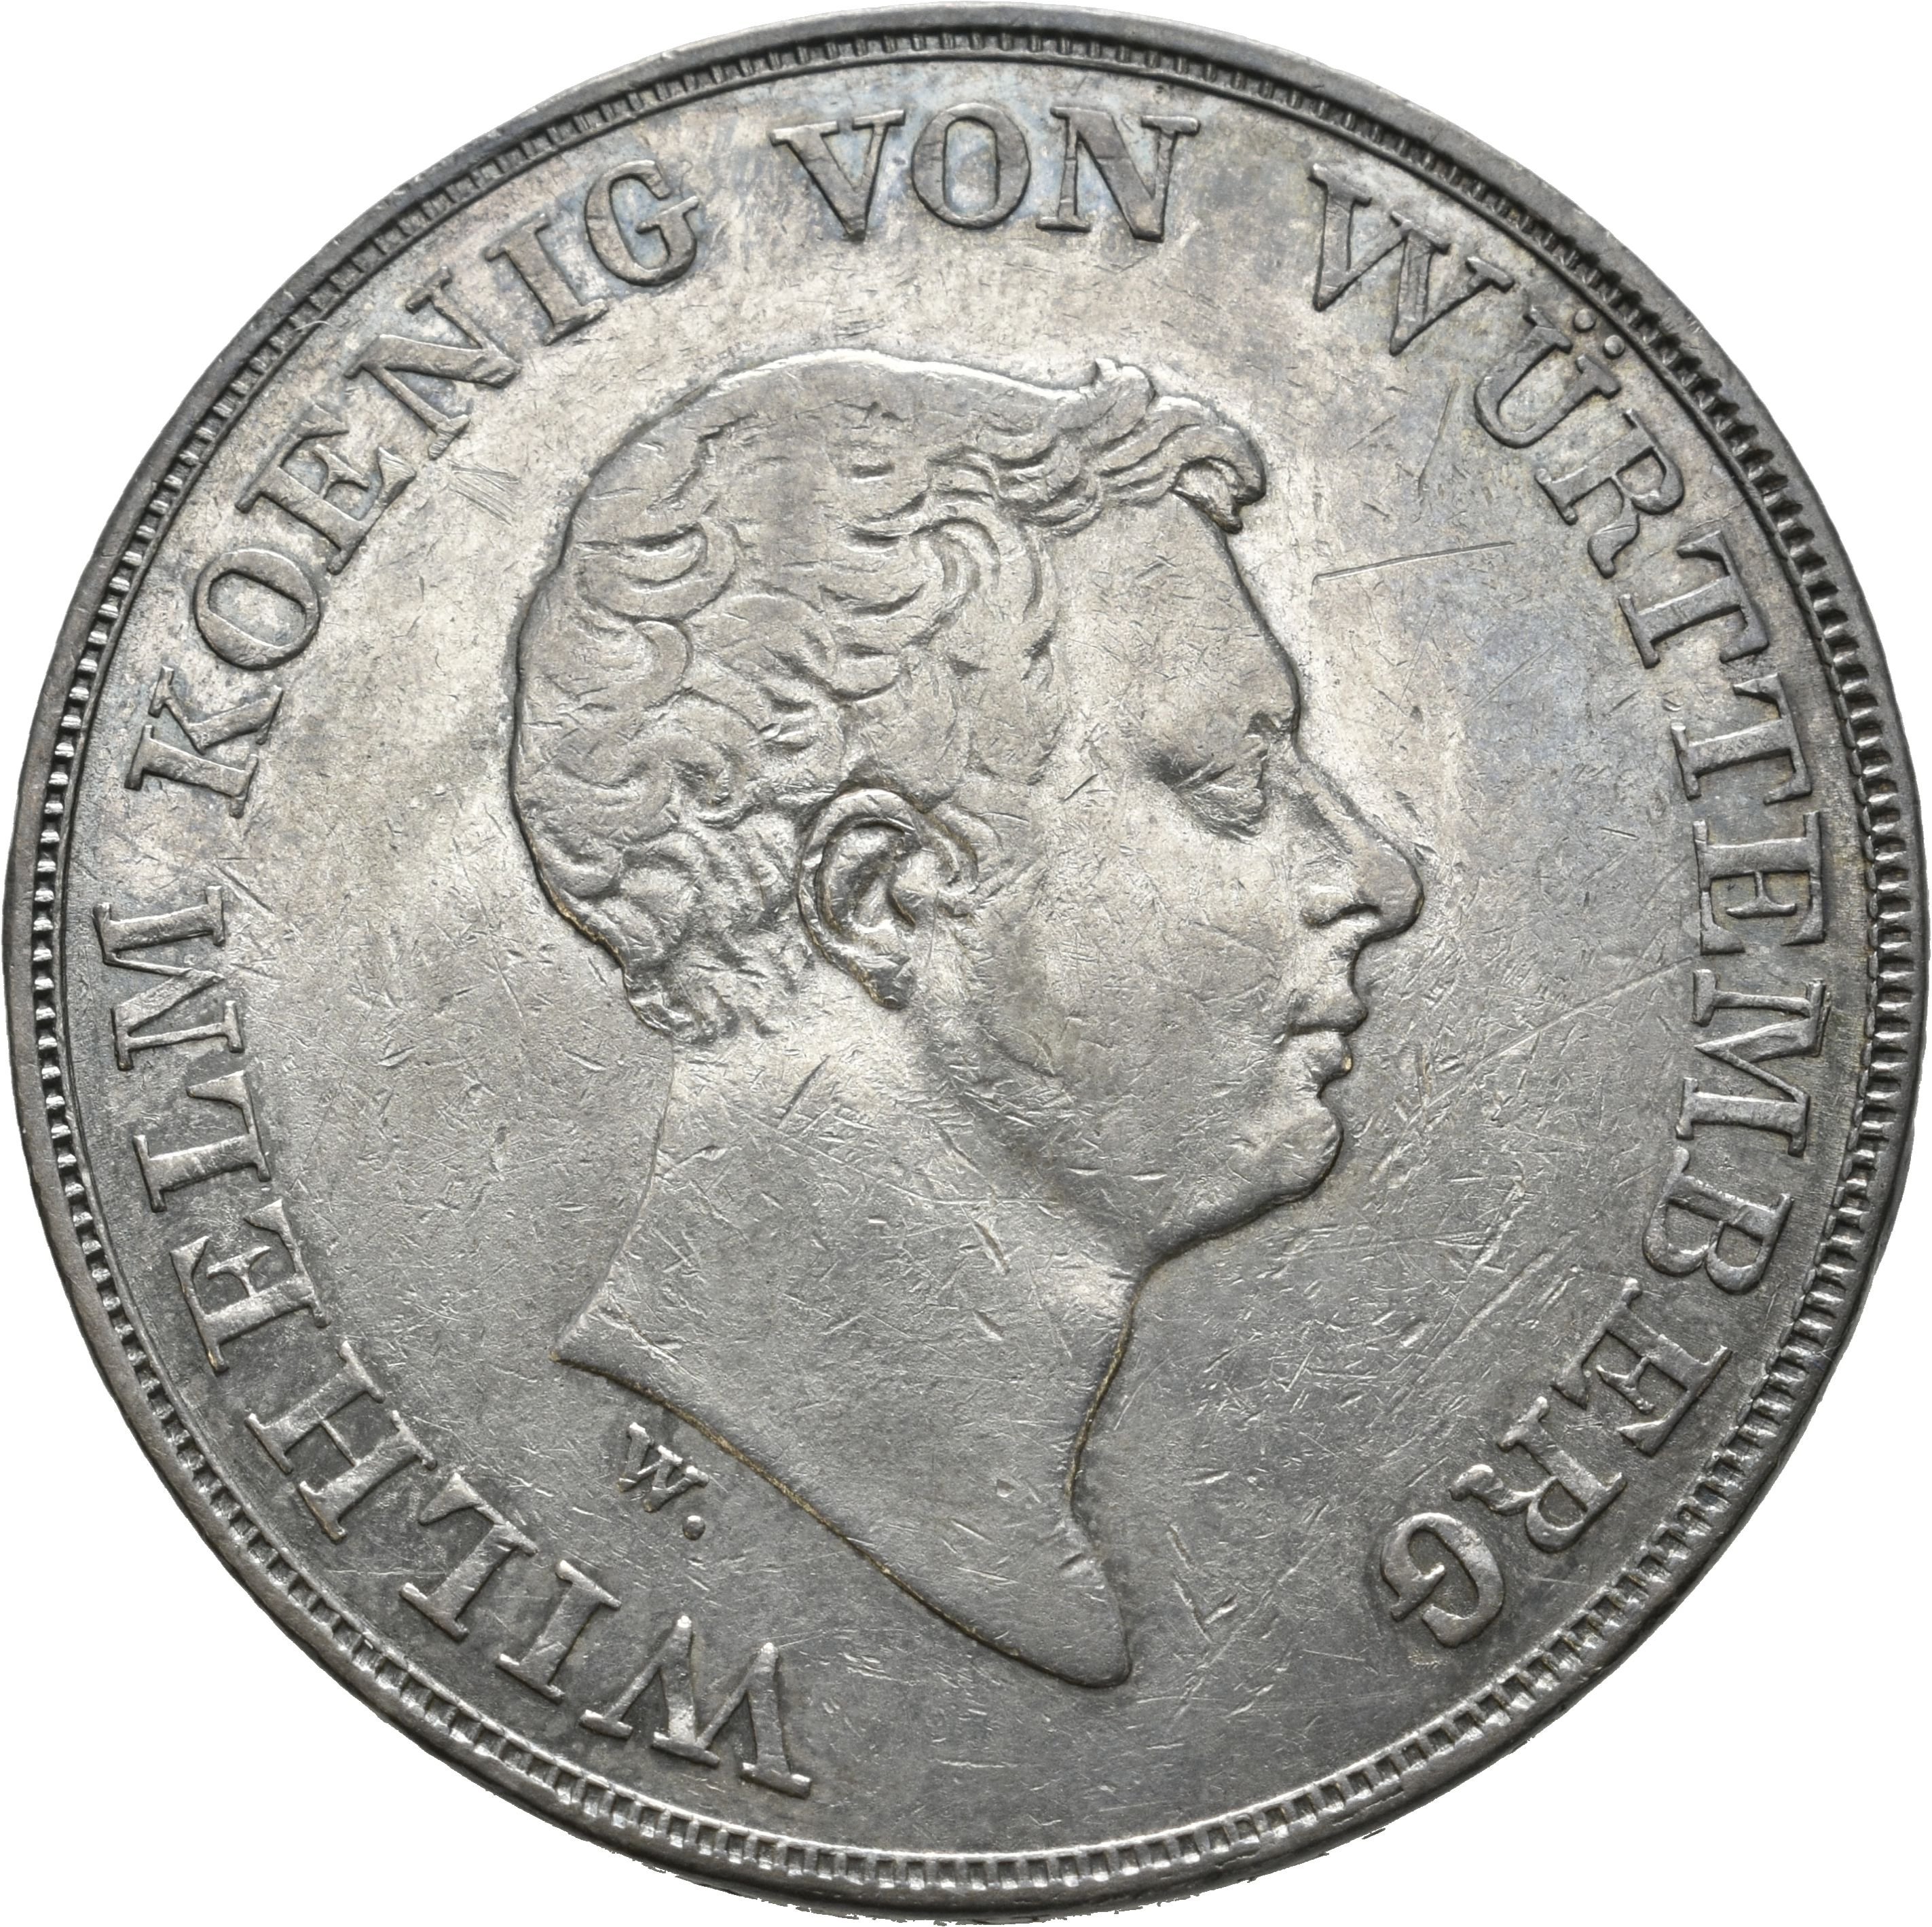 Kronentaler des Königreichs Württemberg von 1835 (Münzsammlung des Sparkassenverbands Baden-Württemberg CC BY-NC-SA)